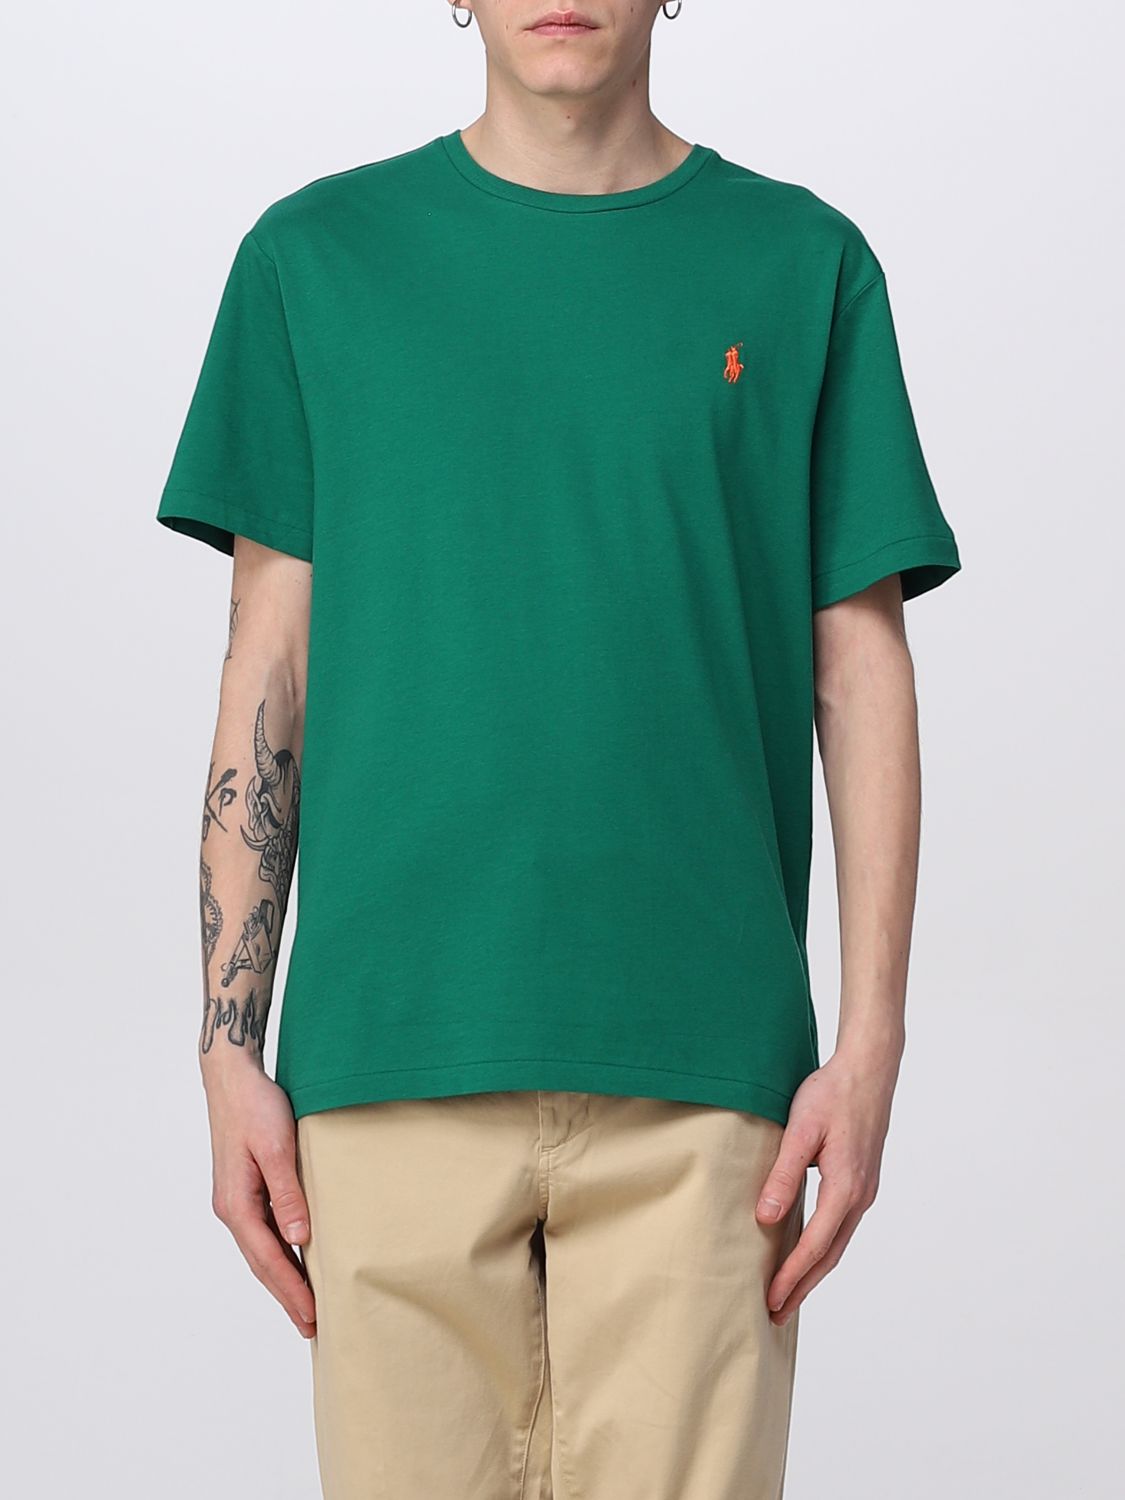 Polo Ralph Lauren T-shirt Men In Grass Green | ModeSens